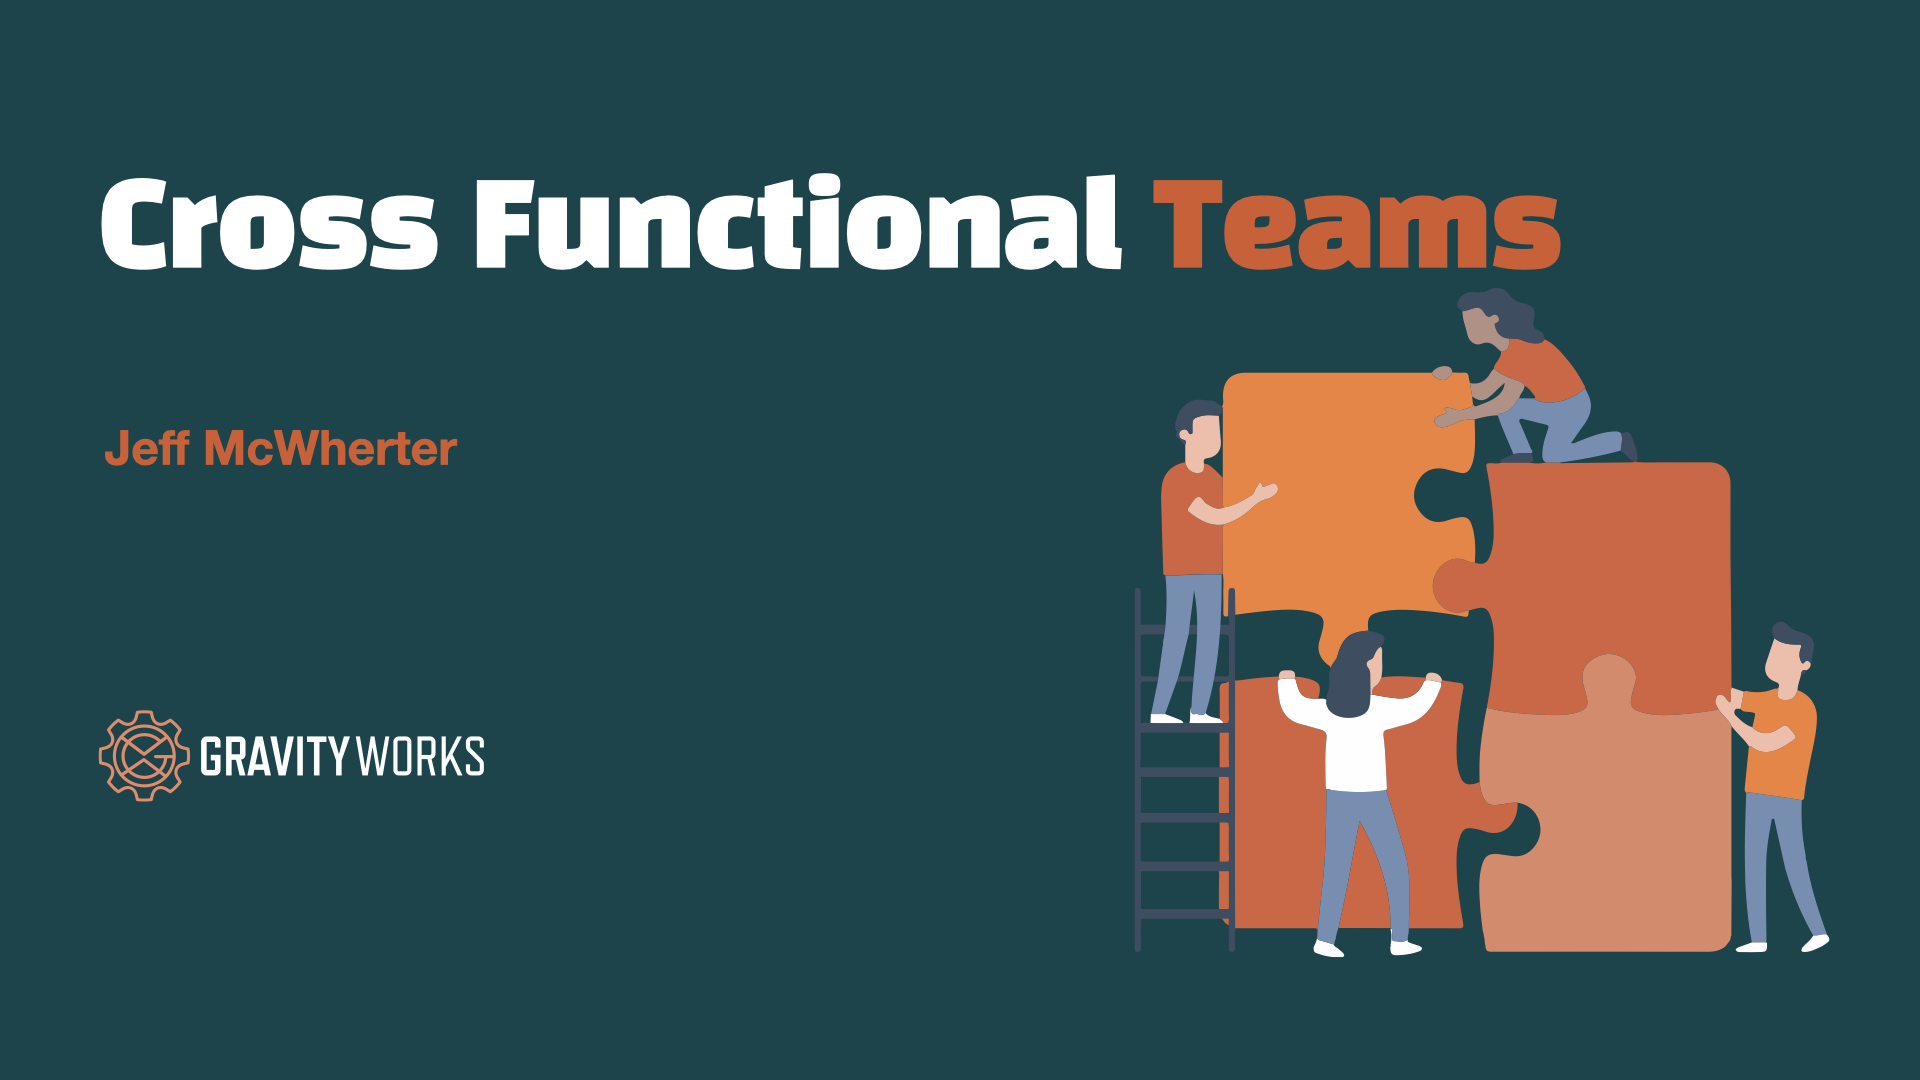 Cross functional teams